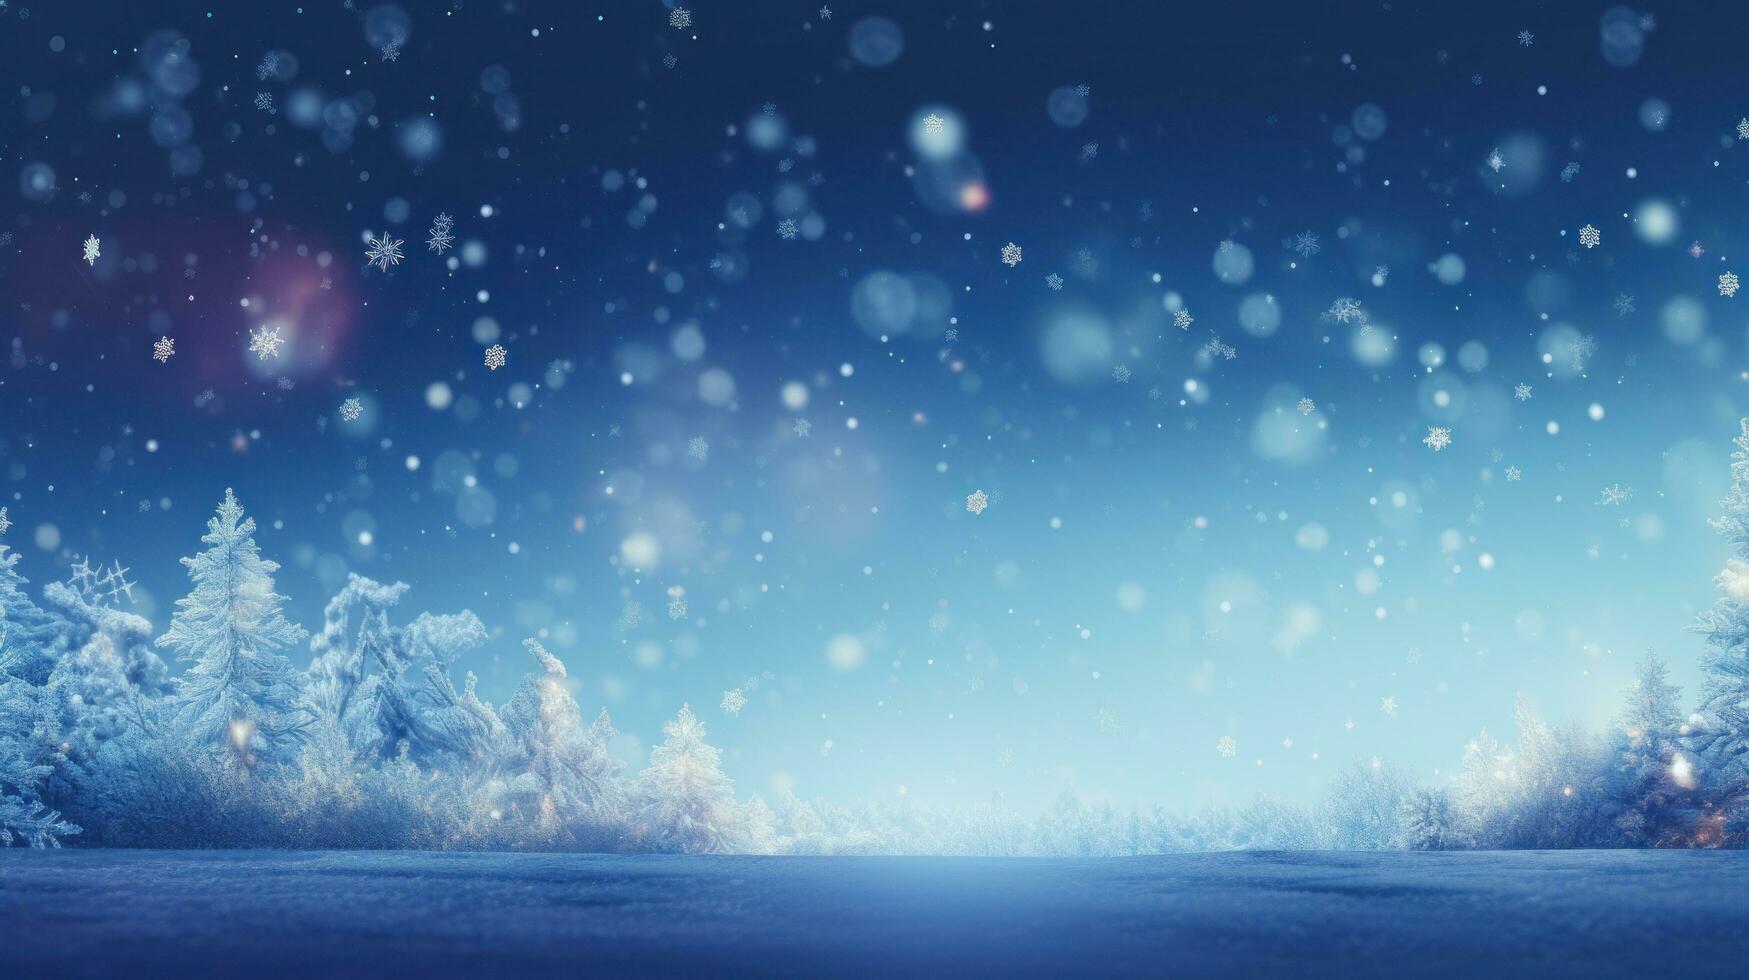 fondo azul navidad con copos de nieve foto